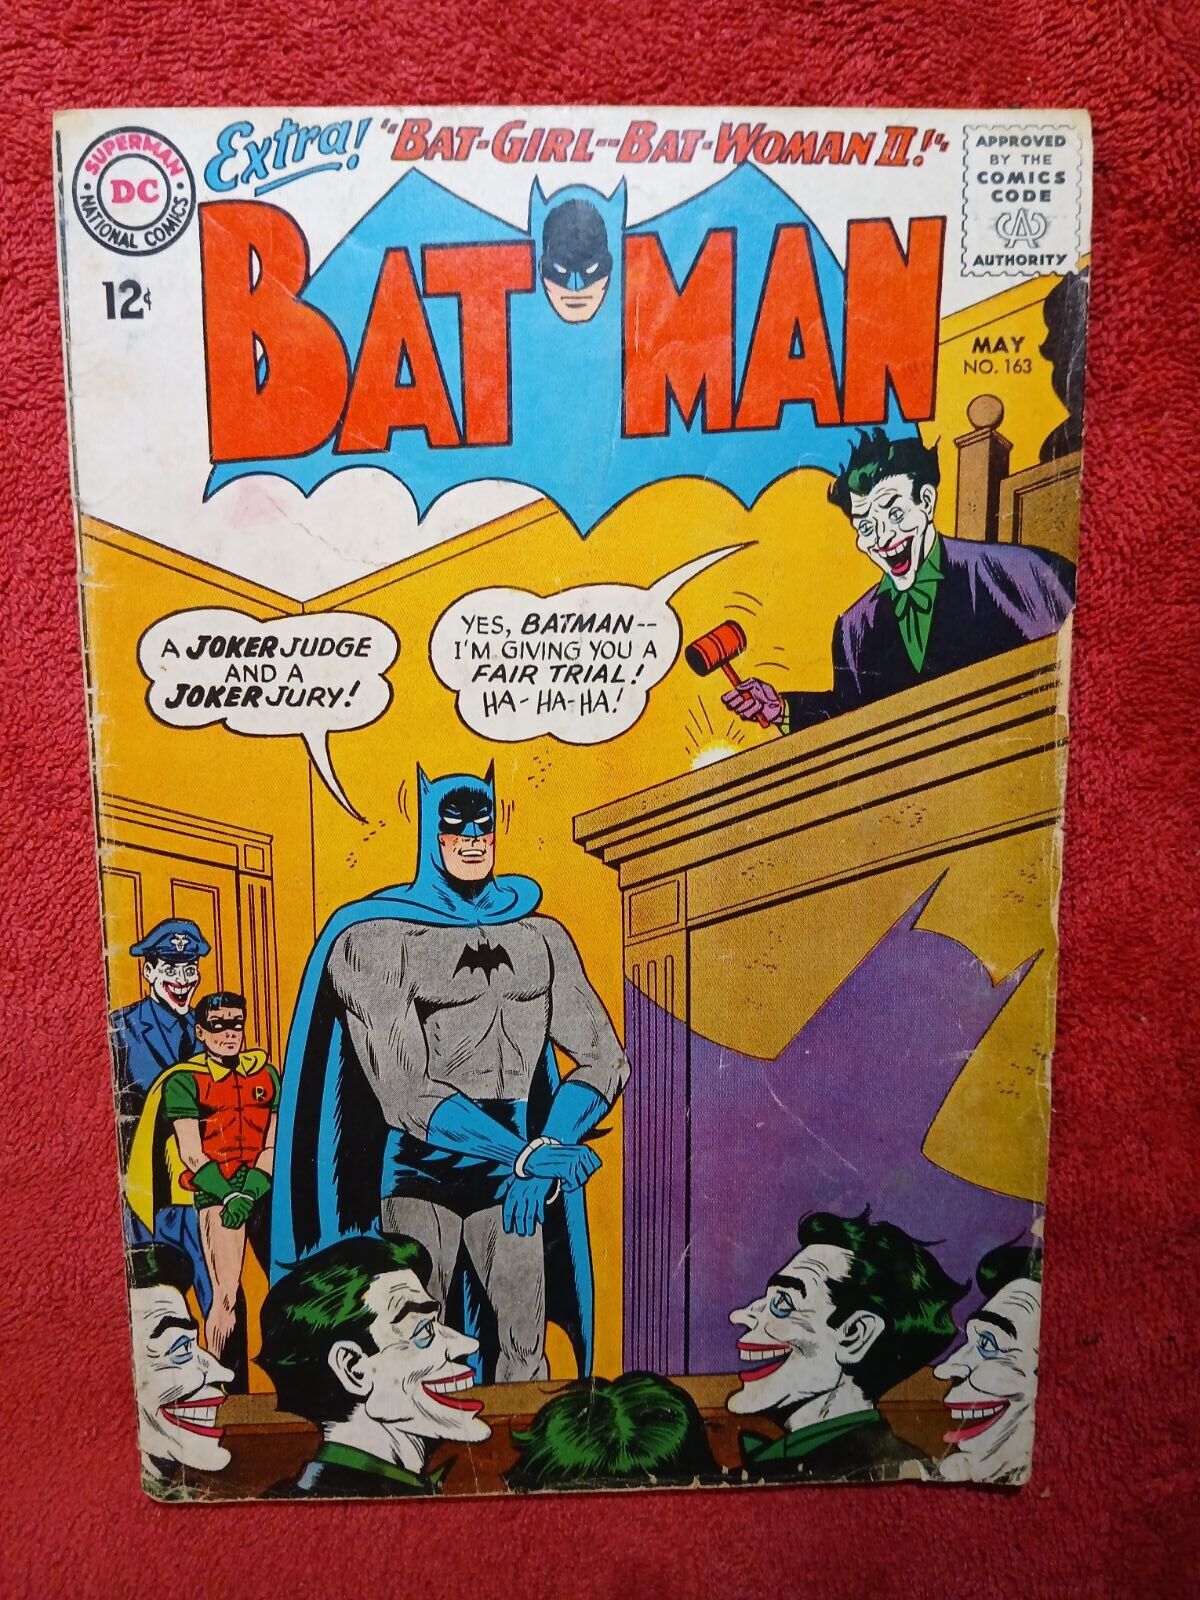 BATMAN #163 - Joker - DC comics 1964 - silver age